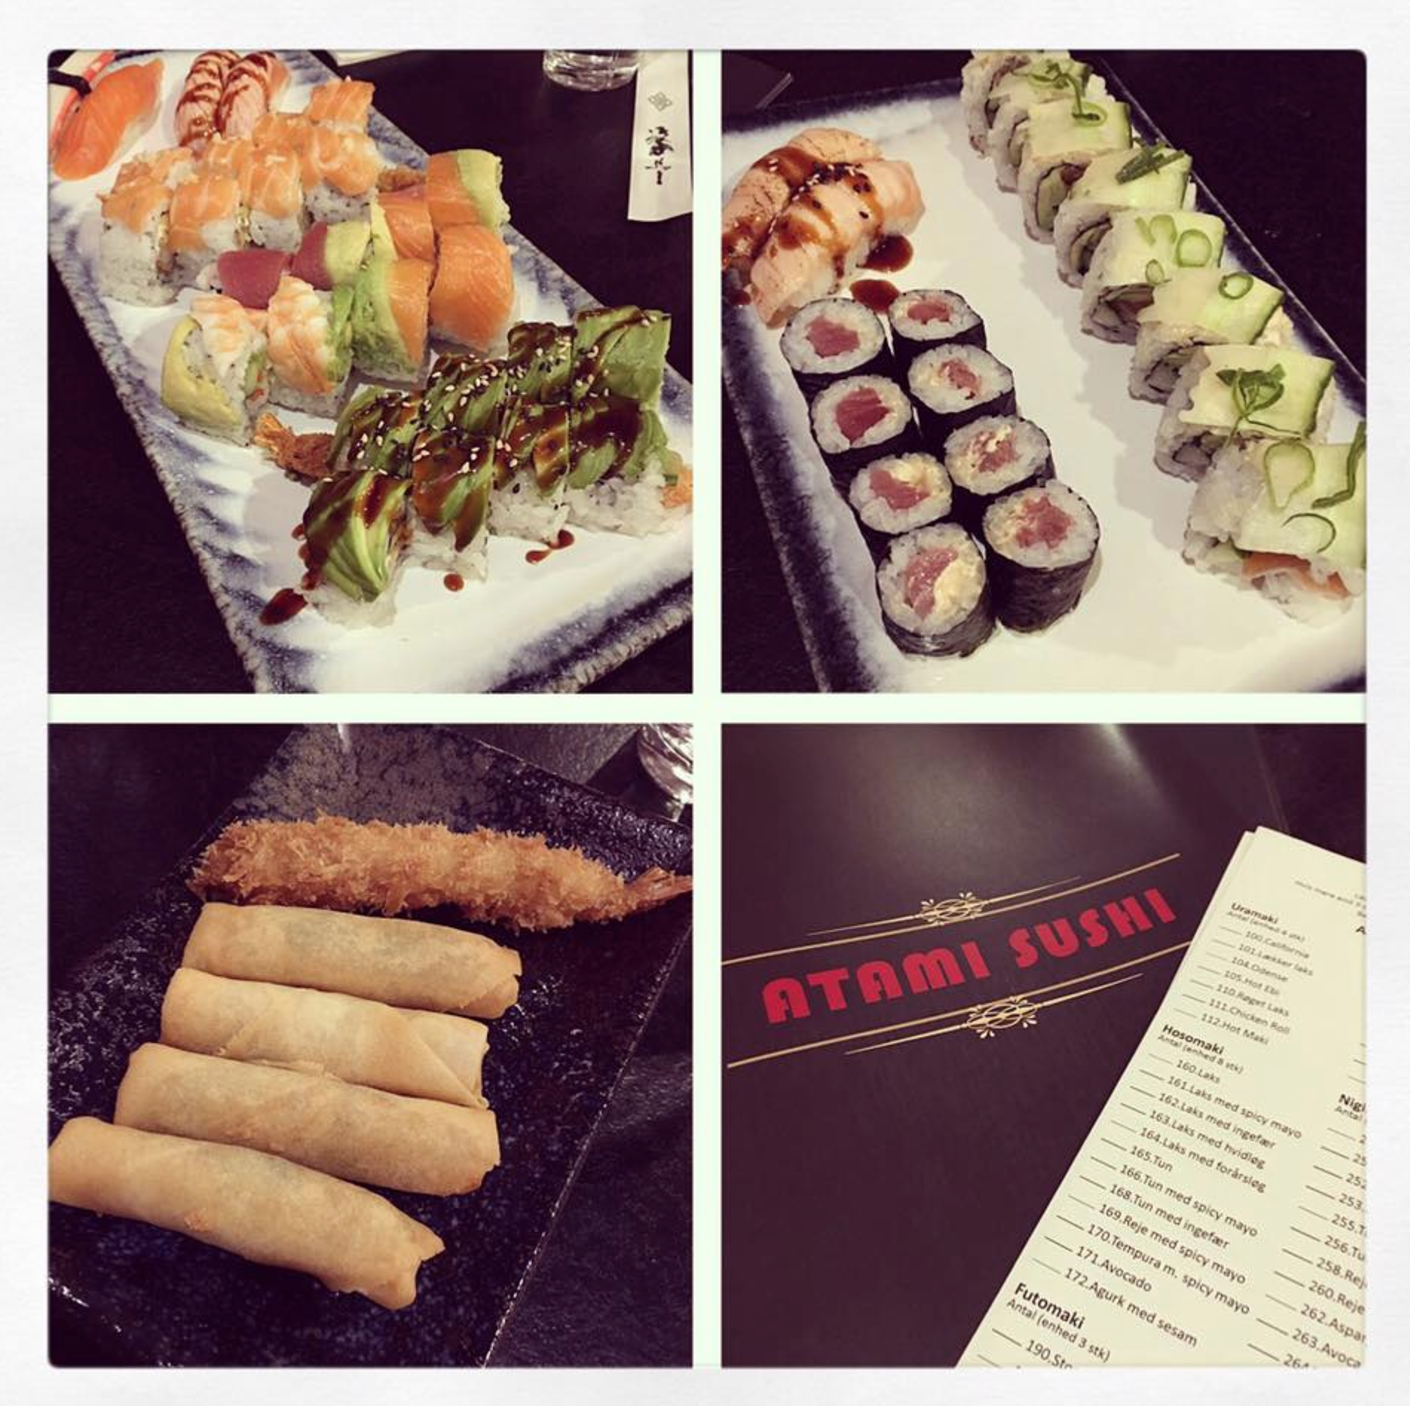 Atami Sushi #1